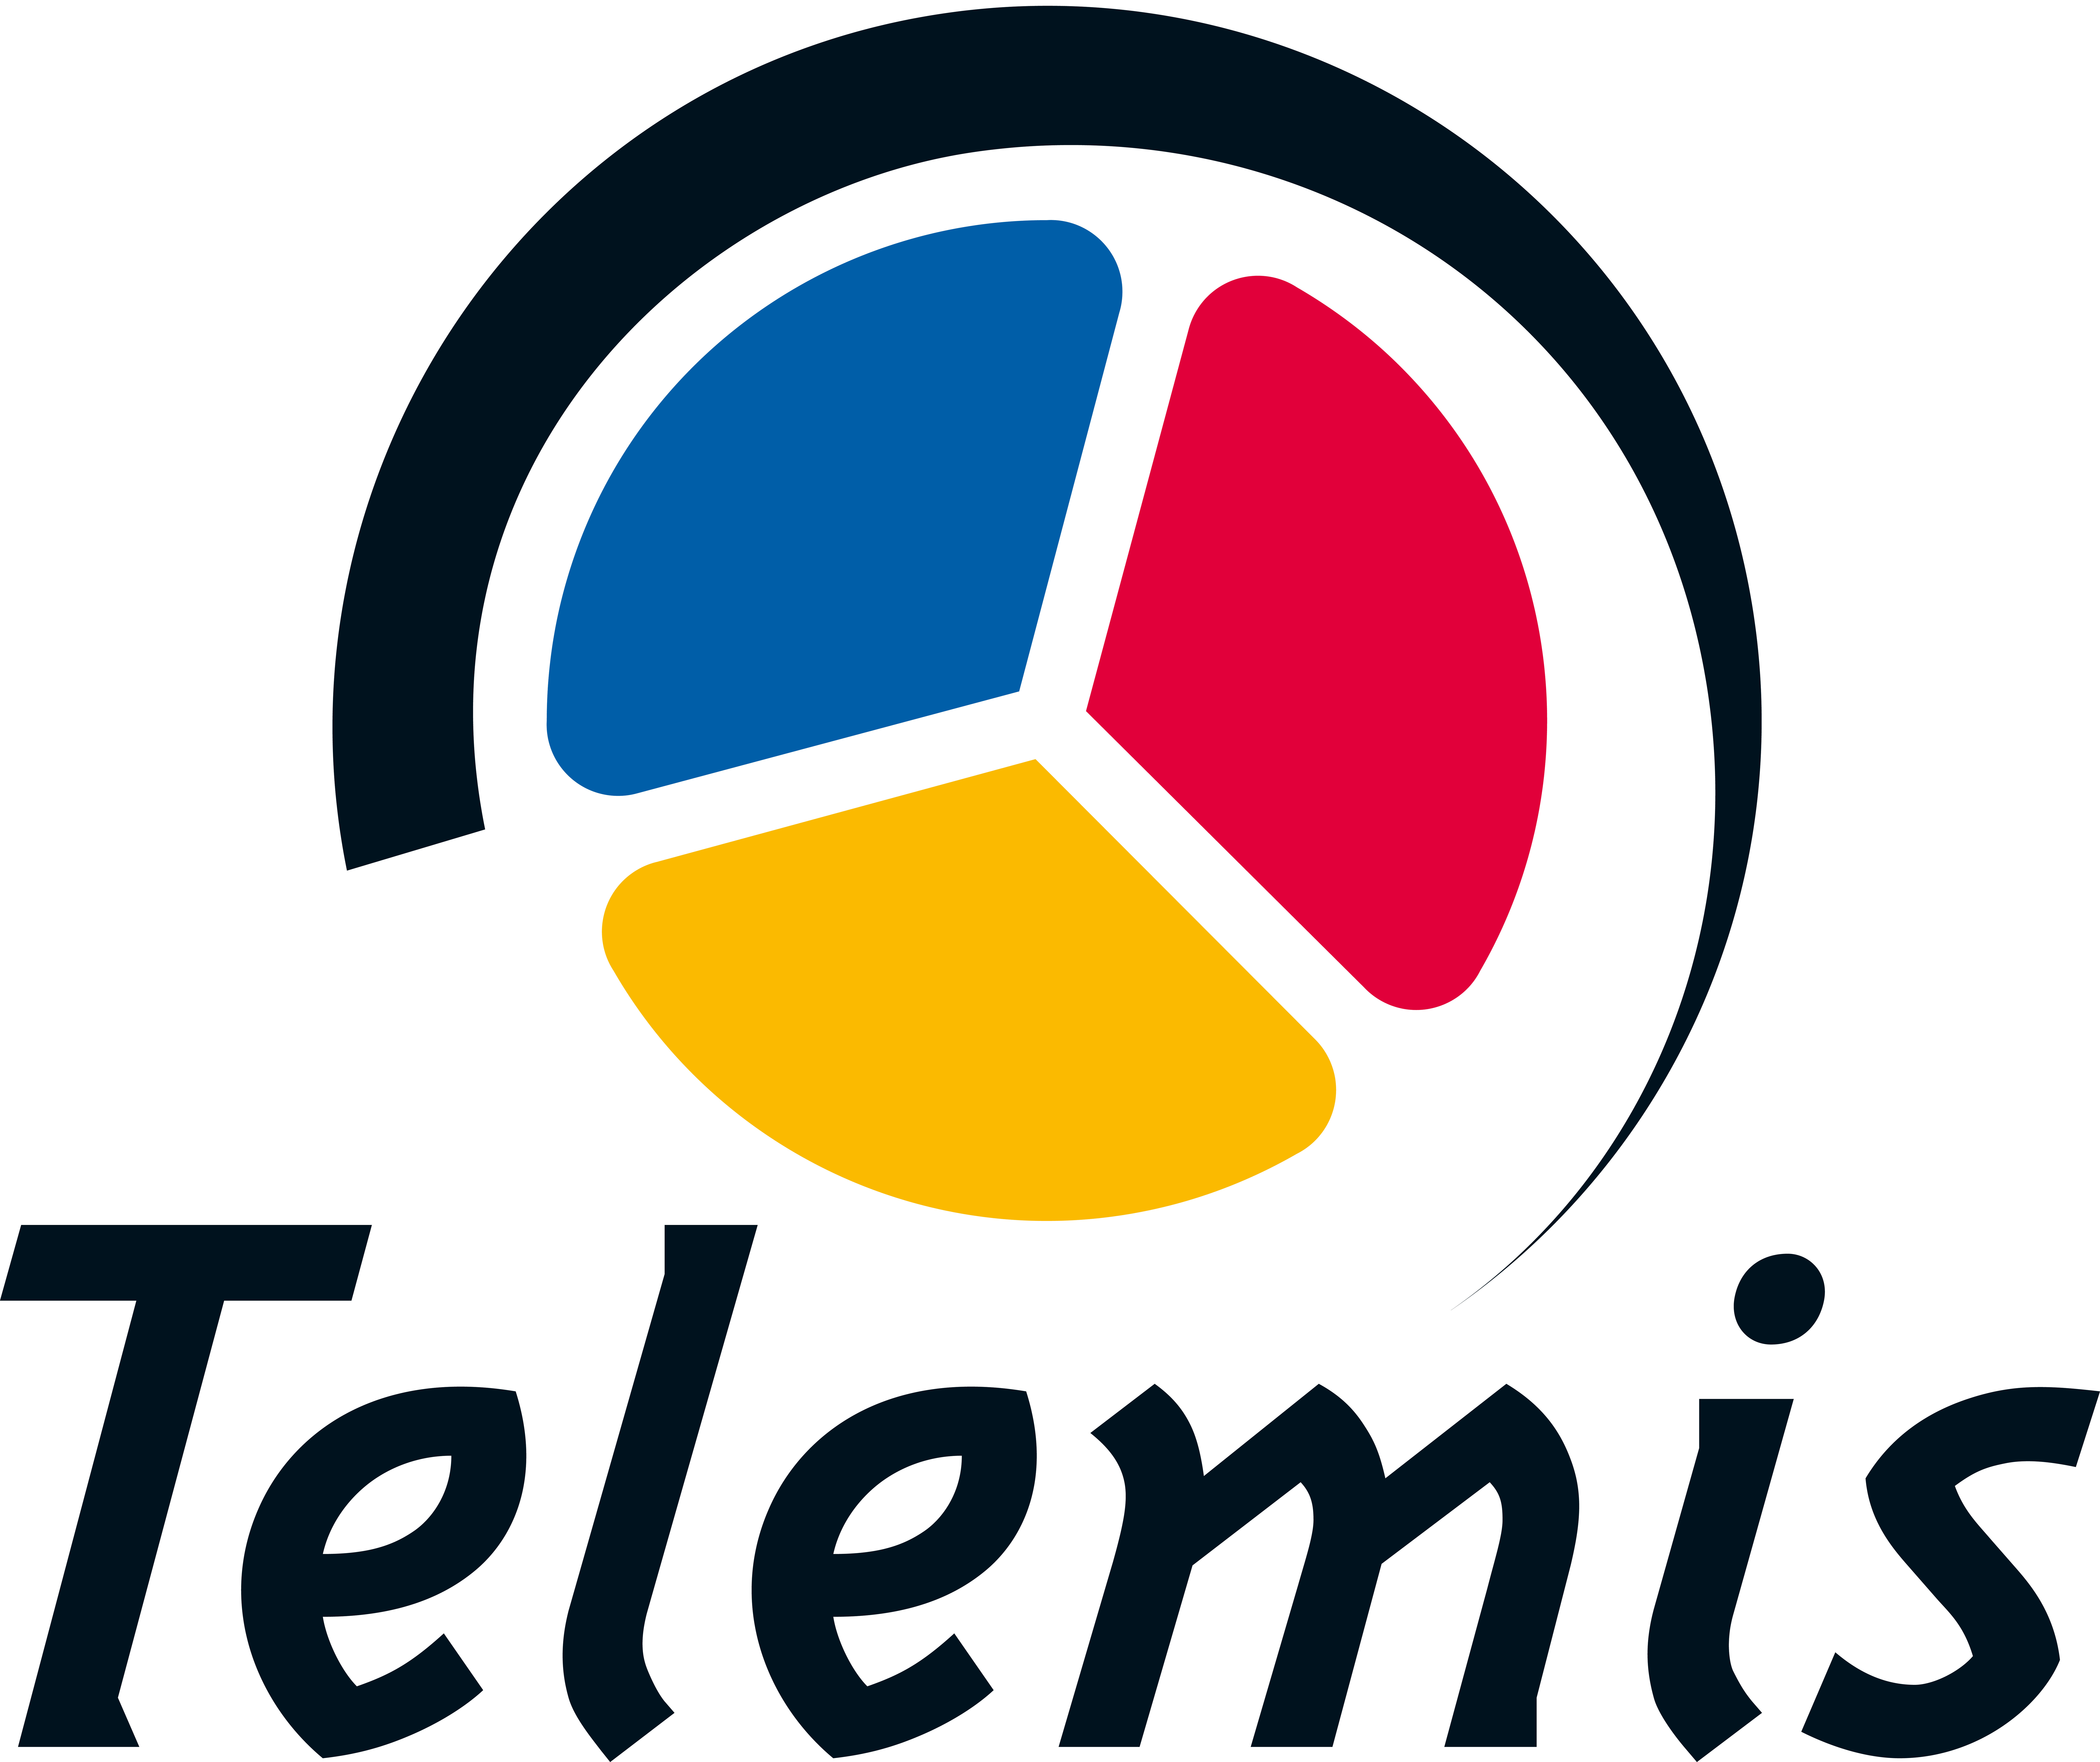 Logo Telemis